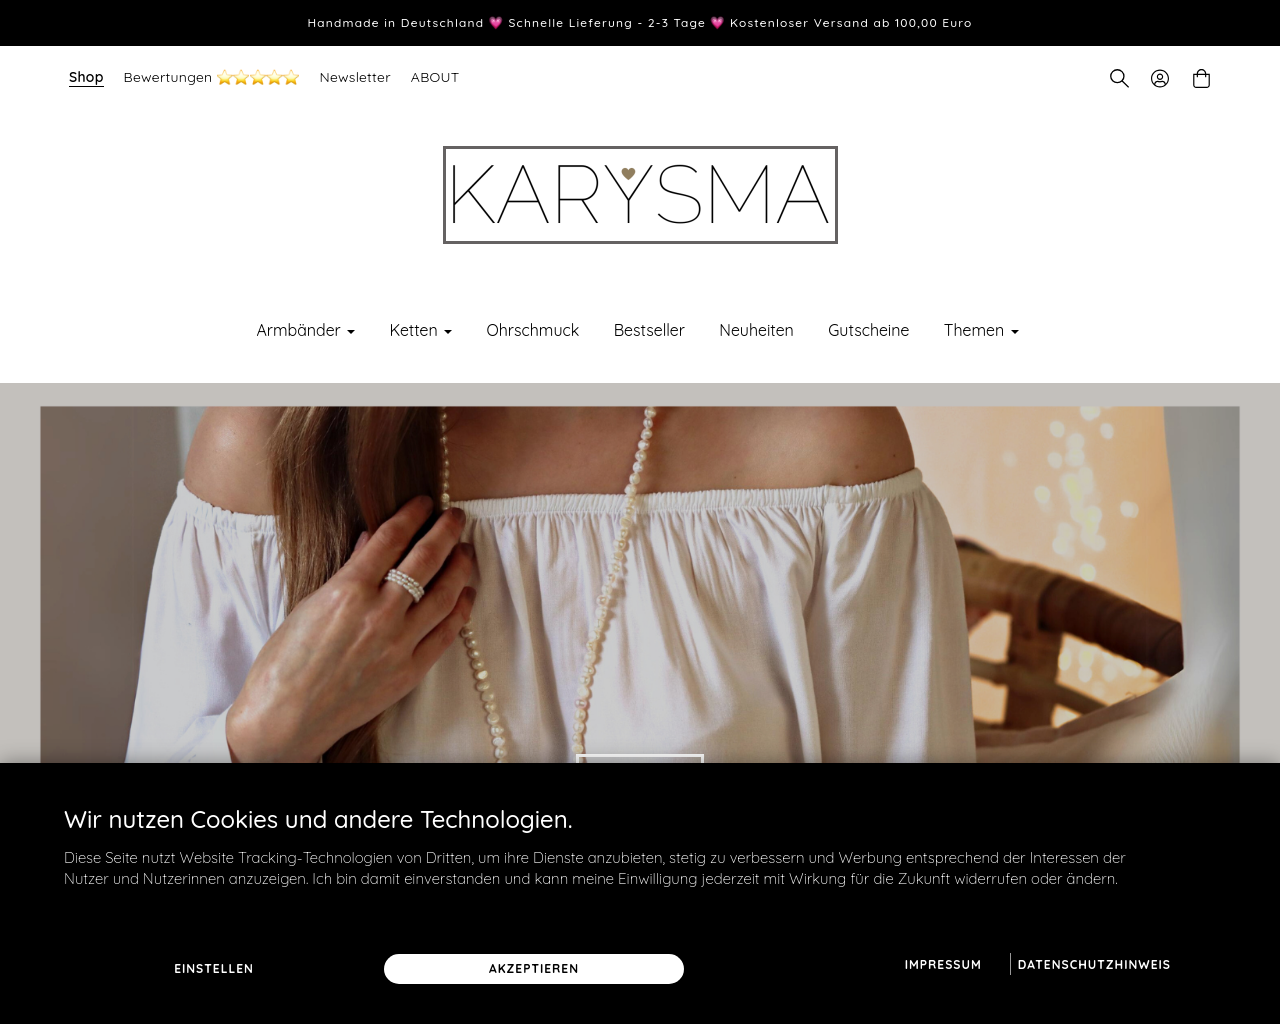 www.karysma.de